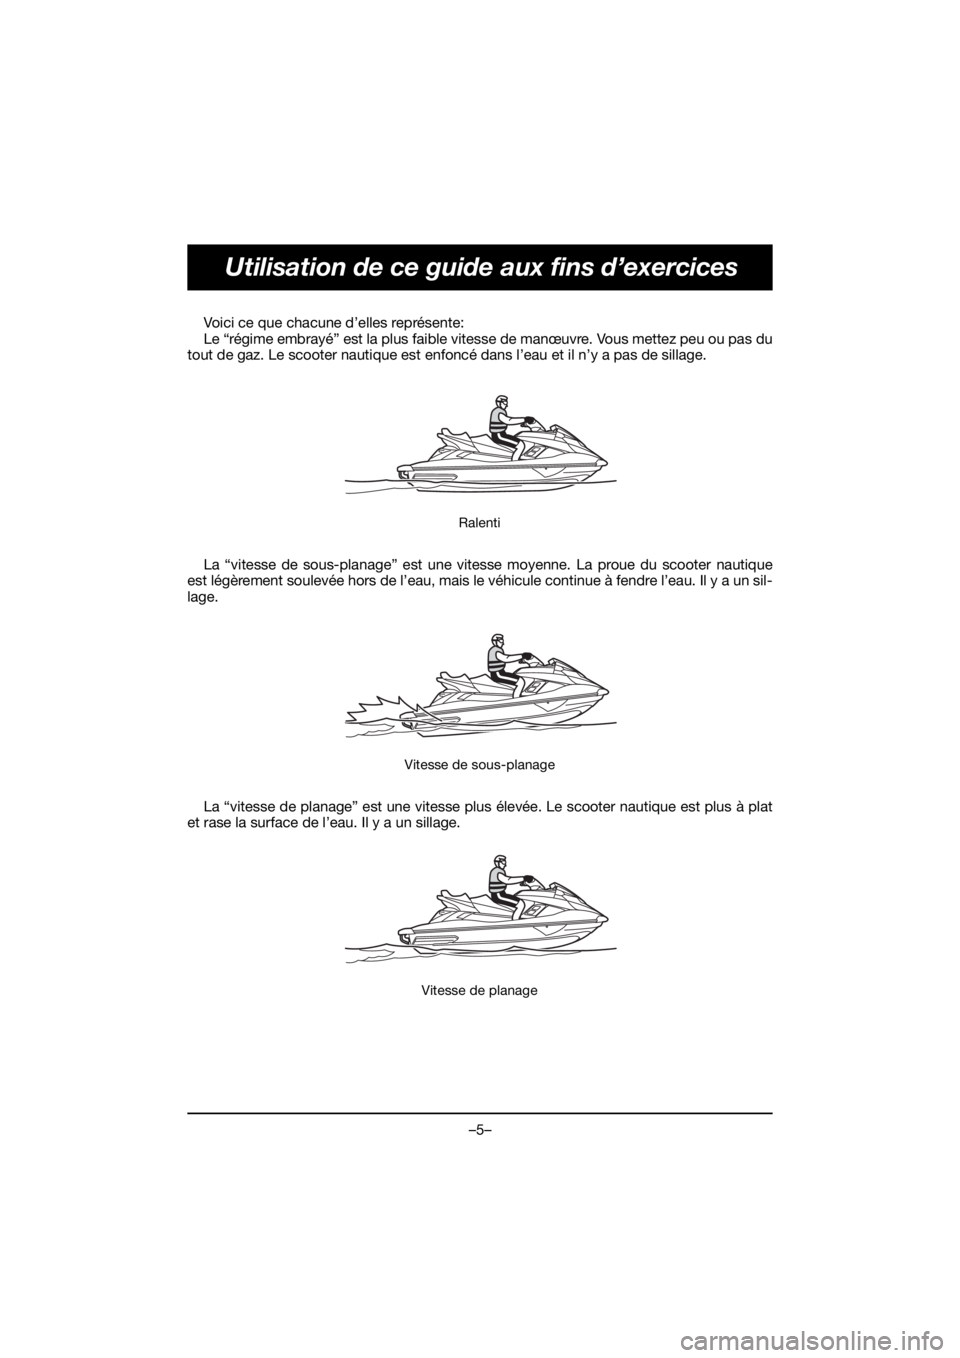 YAMAHA FX HO 2020  Manuale de Empleo (in Spanish) –5–
Utilisation de ce guide aux fins d’exercices
Voici ce que chacune d’elles représente: 
Le “régime embrayé” est la plus faible vitesse de manœuvre. Vous mettez peu ou pas du
tout de